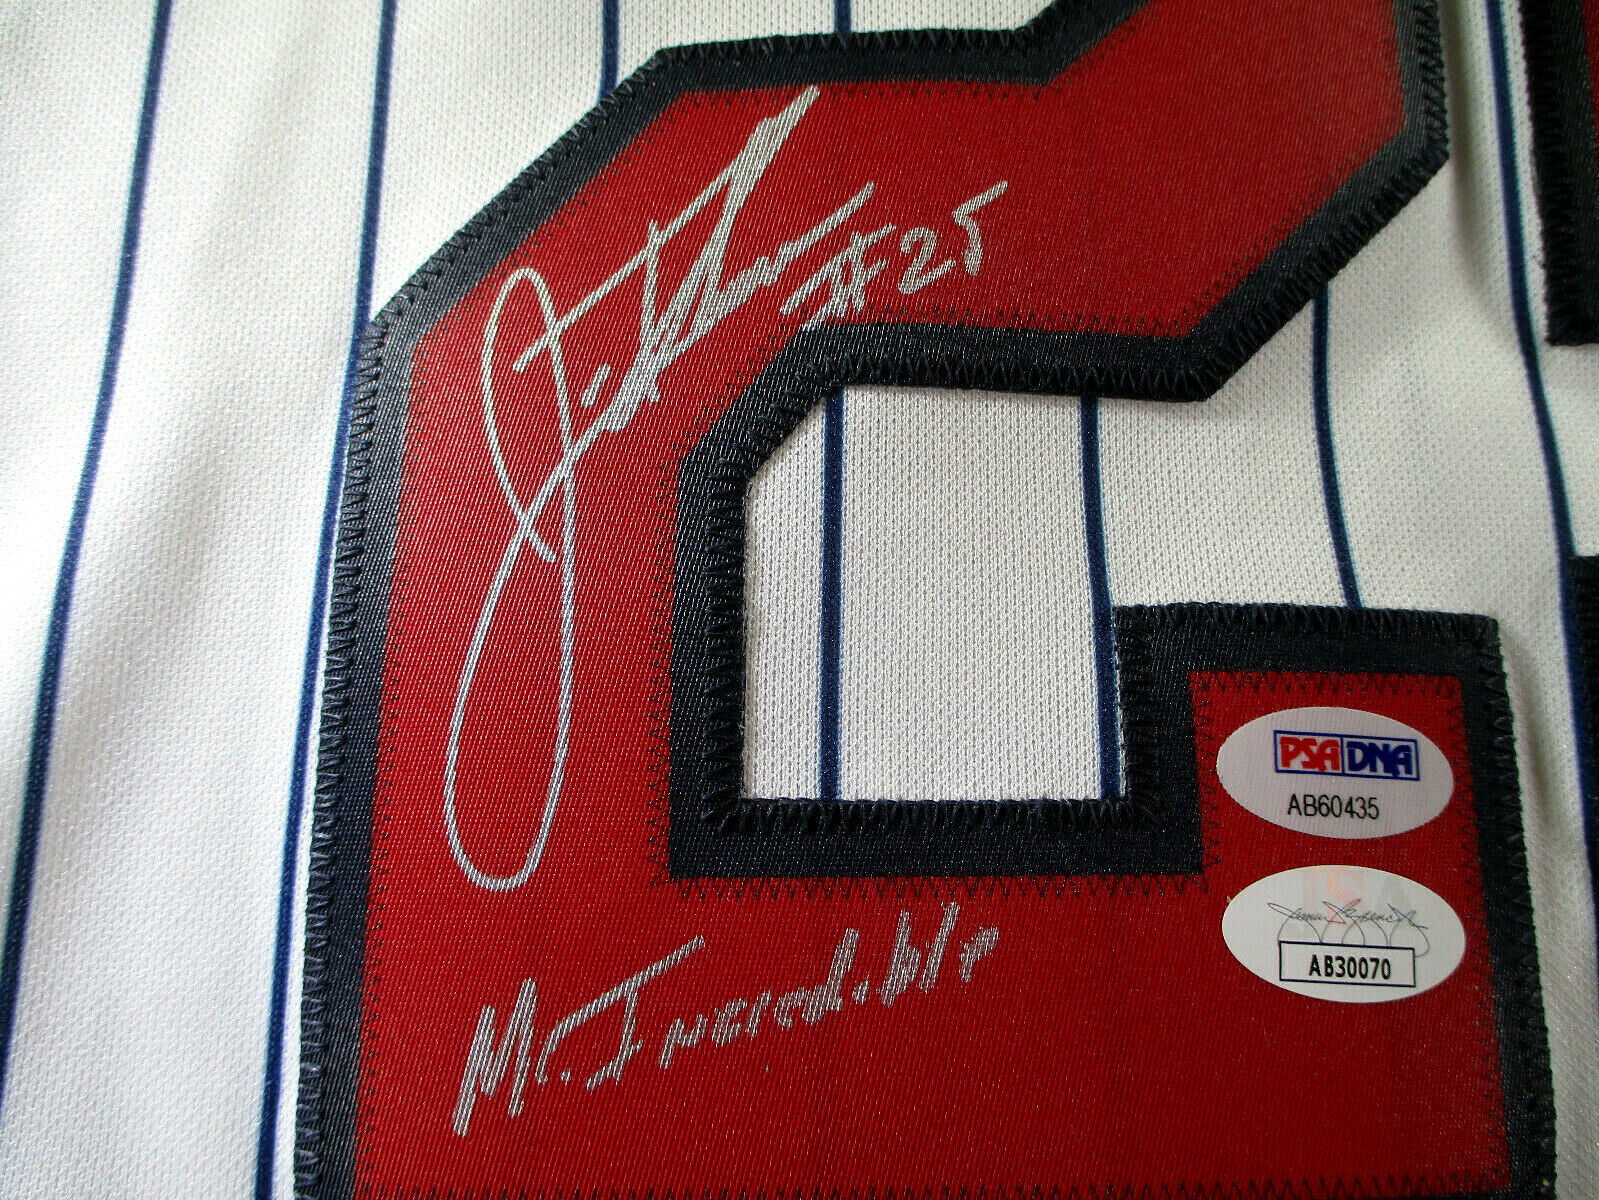 Jim Thome / Autographed Minnesota Twins Majestic Baseball Jersey / PSA/DNA & JSA